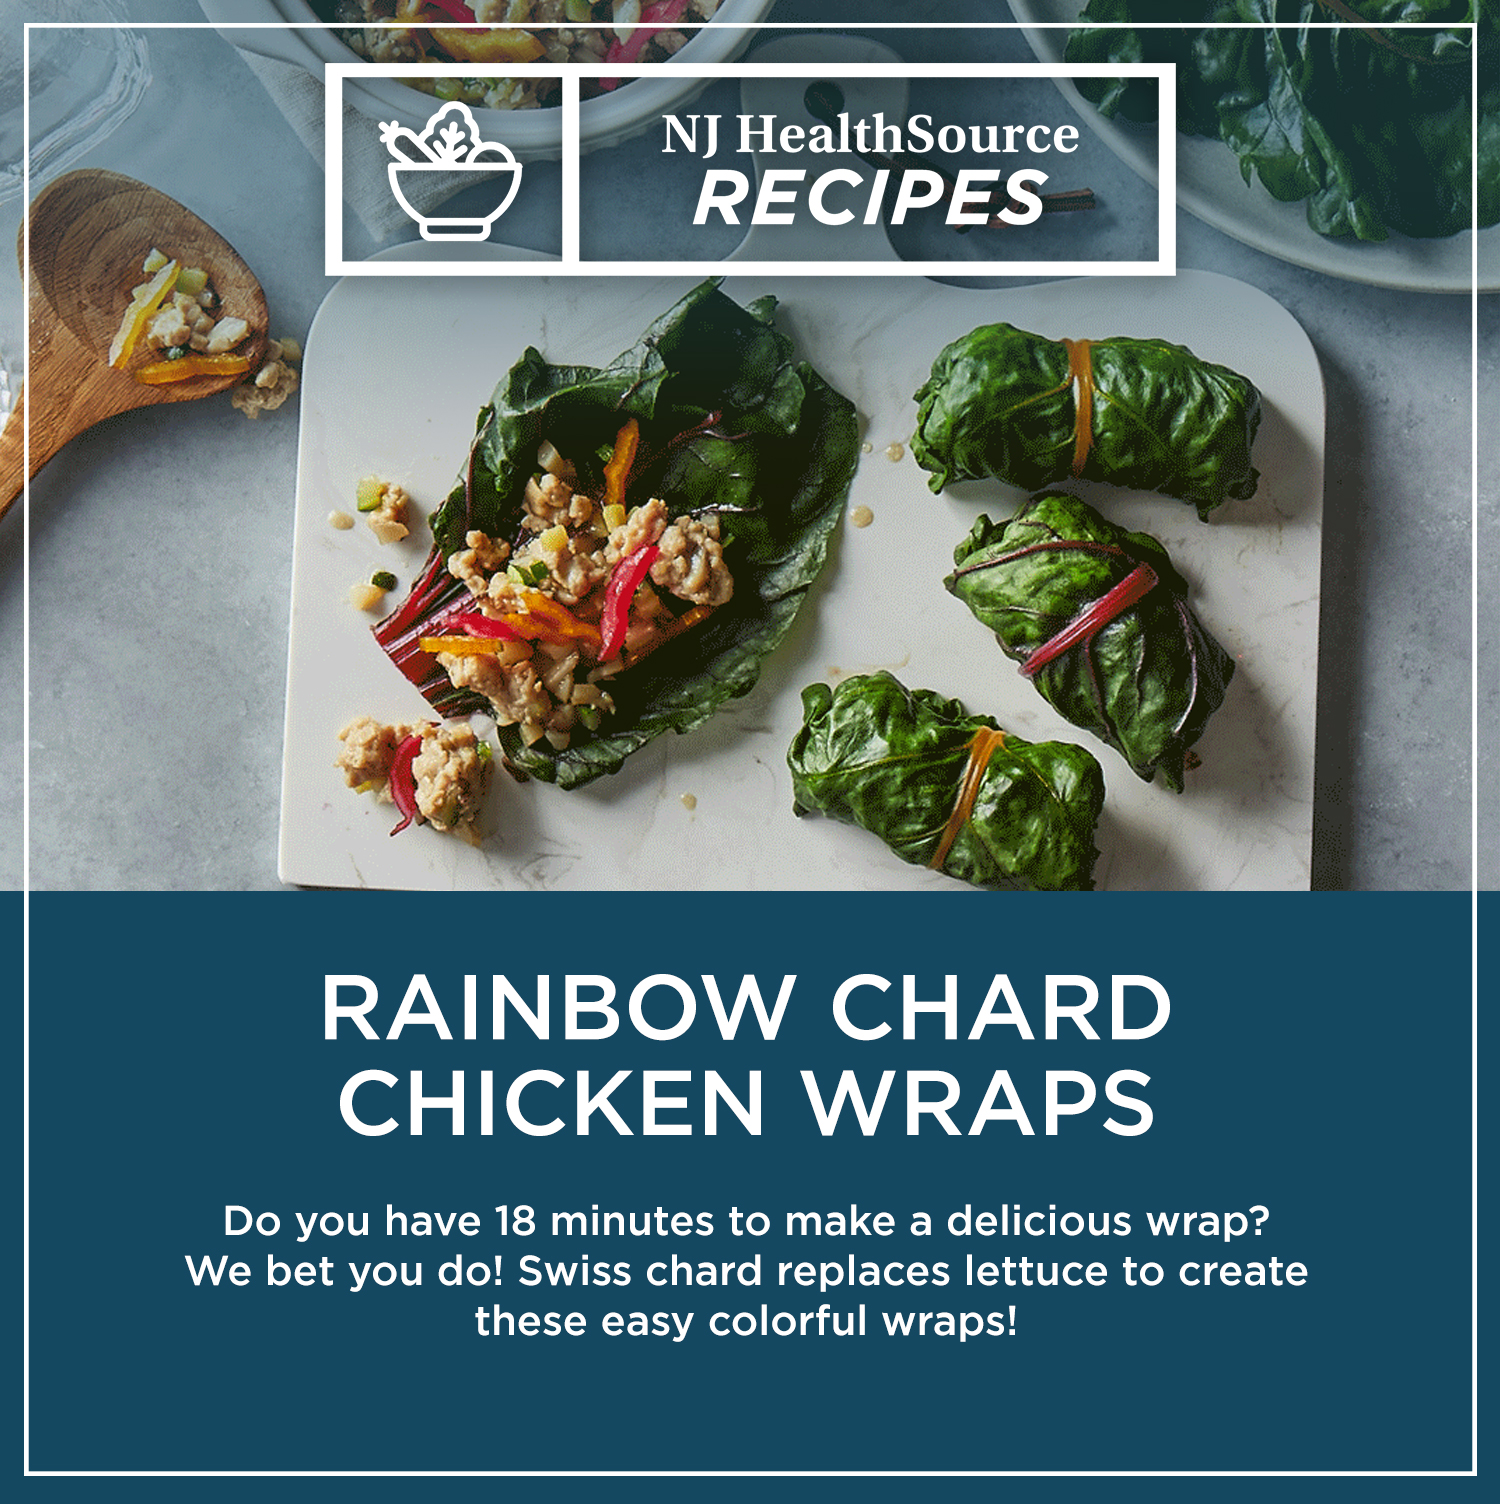 Rainbow Chard Chicken Wraps.jpg